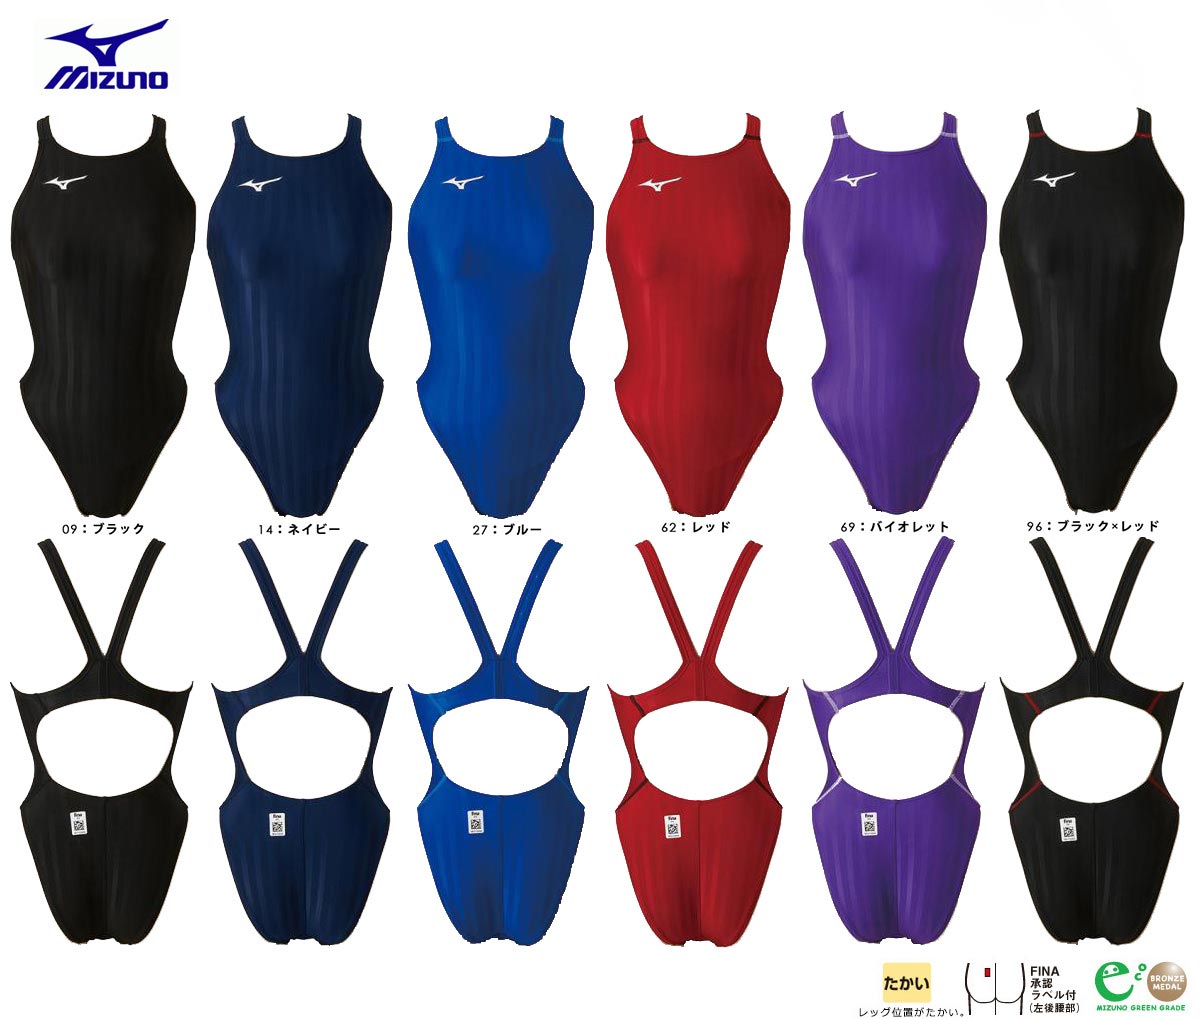 Mizuno N2MA0222 swimwear color overview